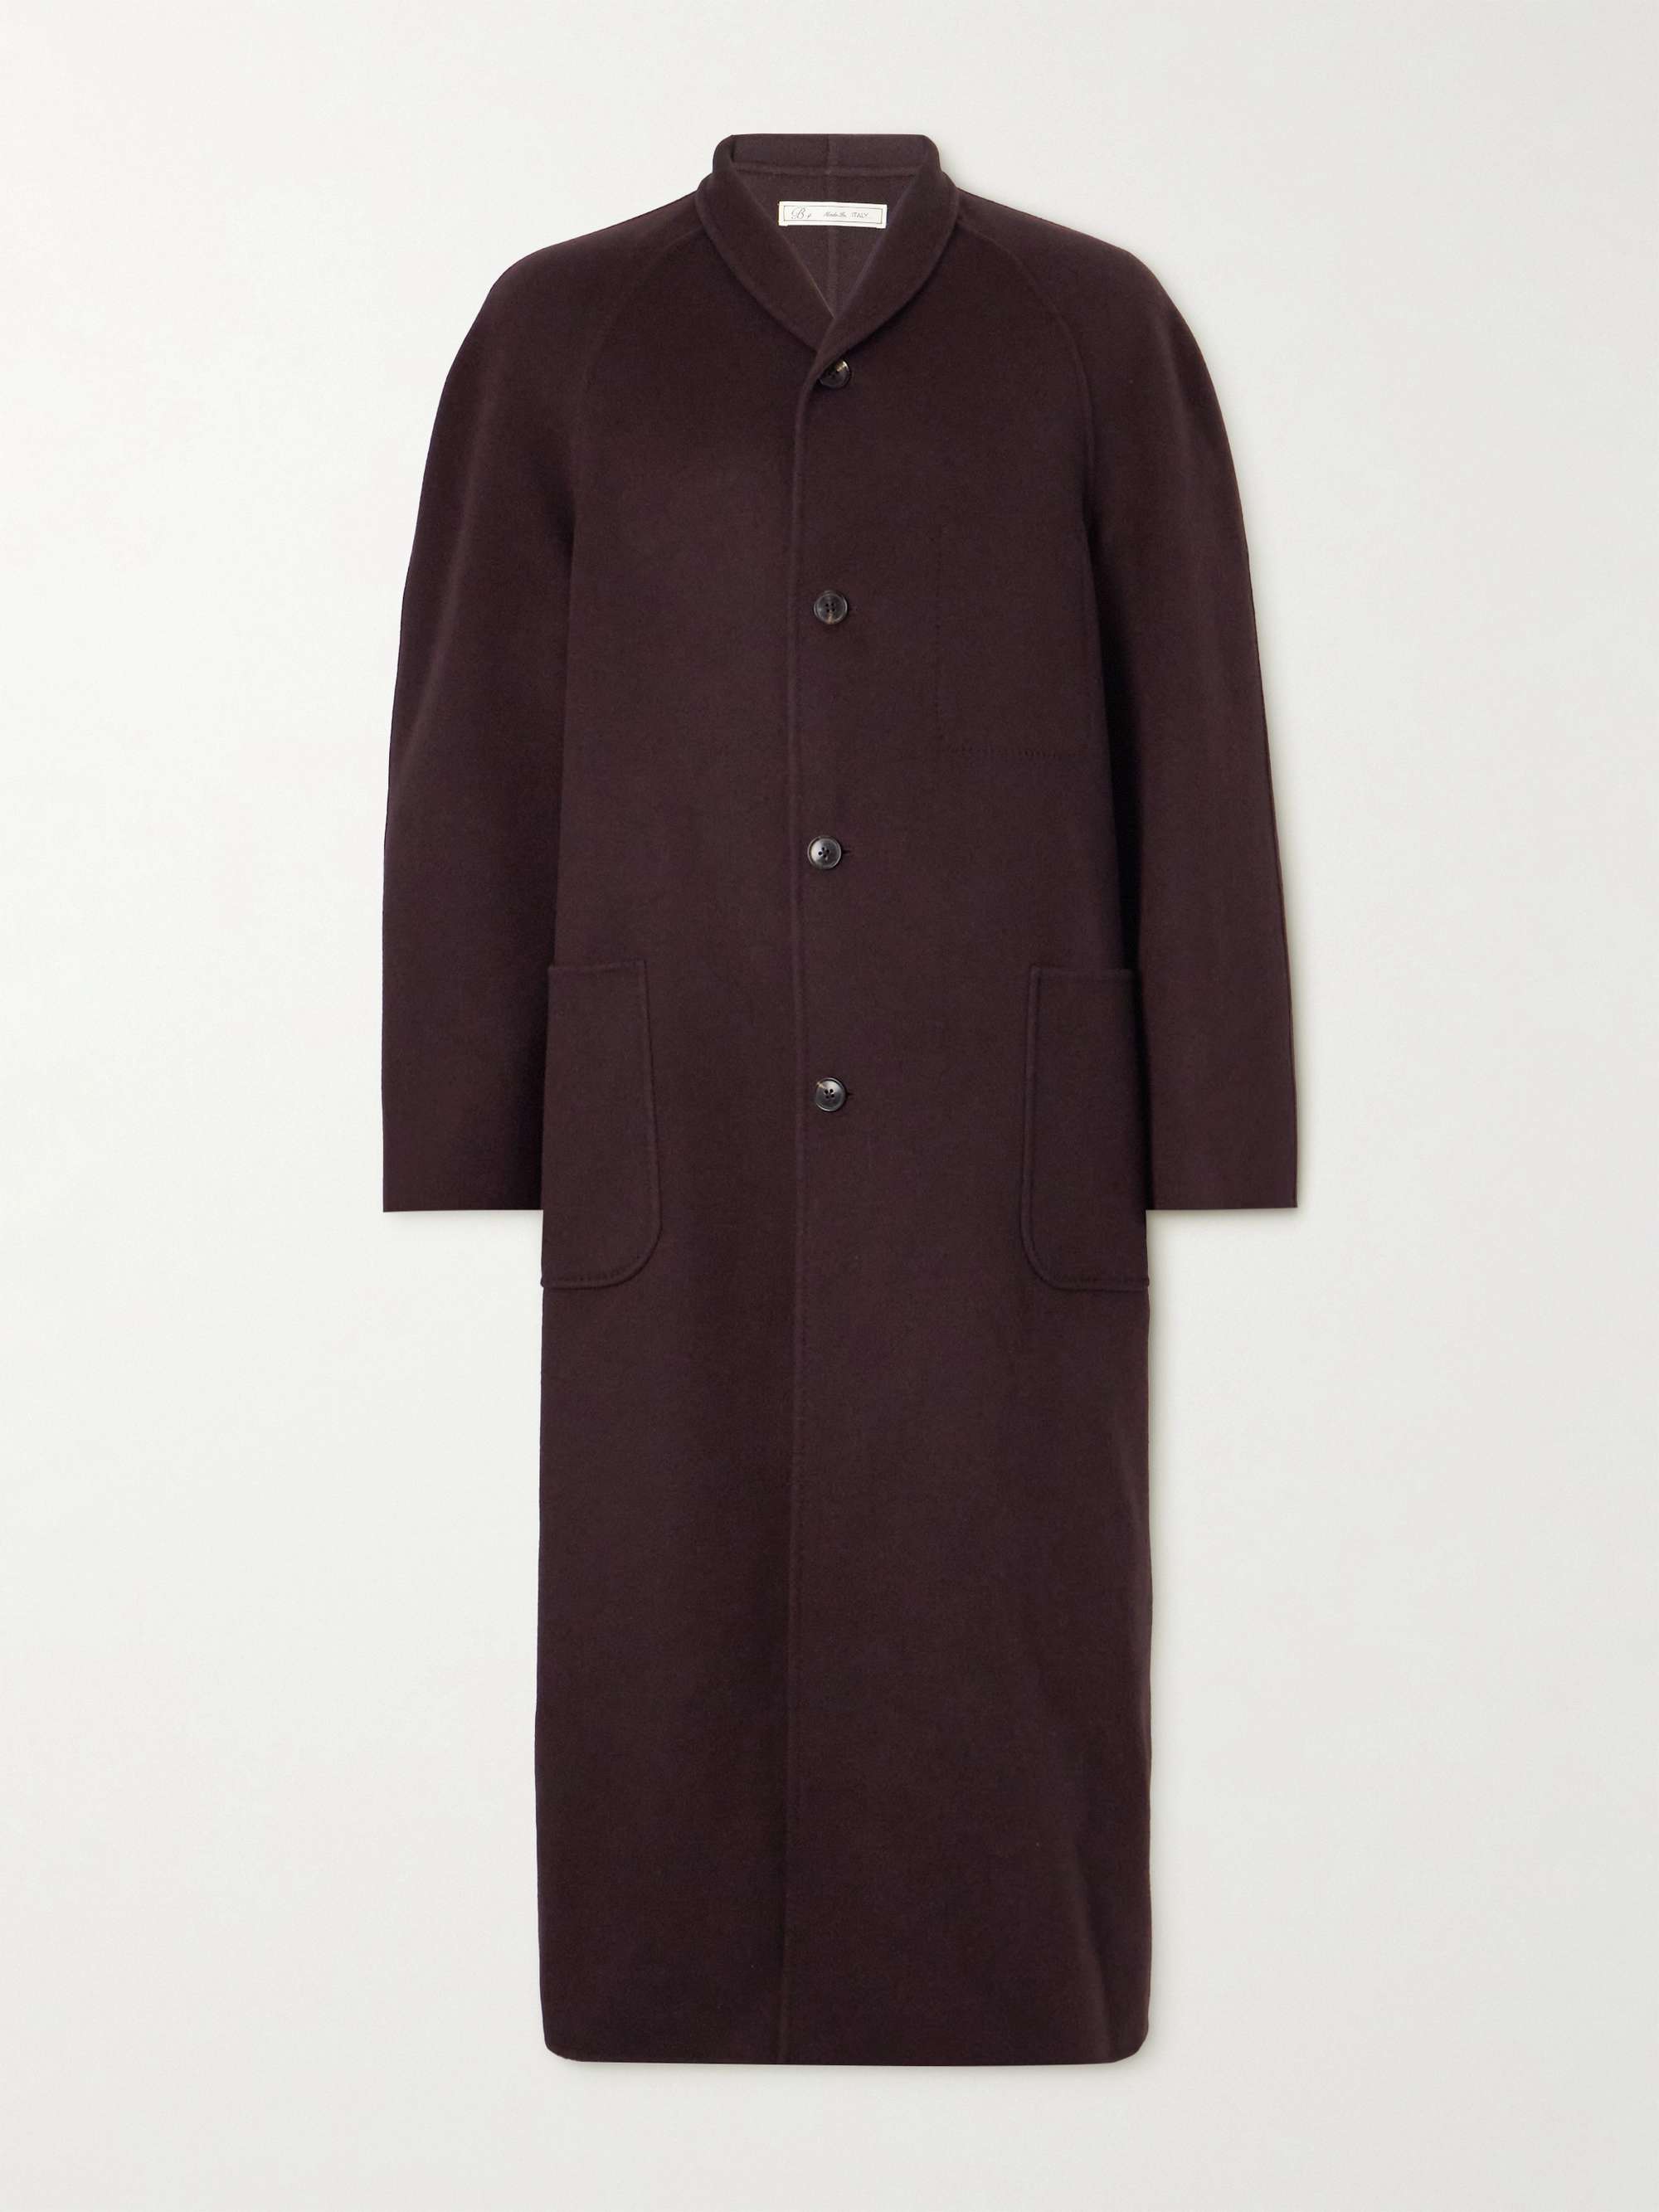 UMIT BENAN B+ Cashmere Coat for Men | MR PORTER